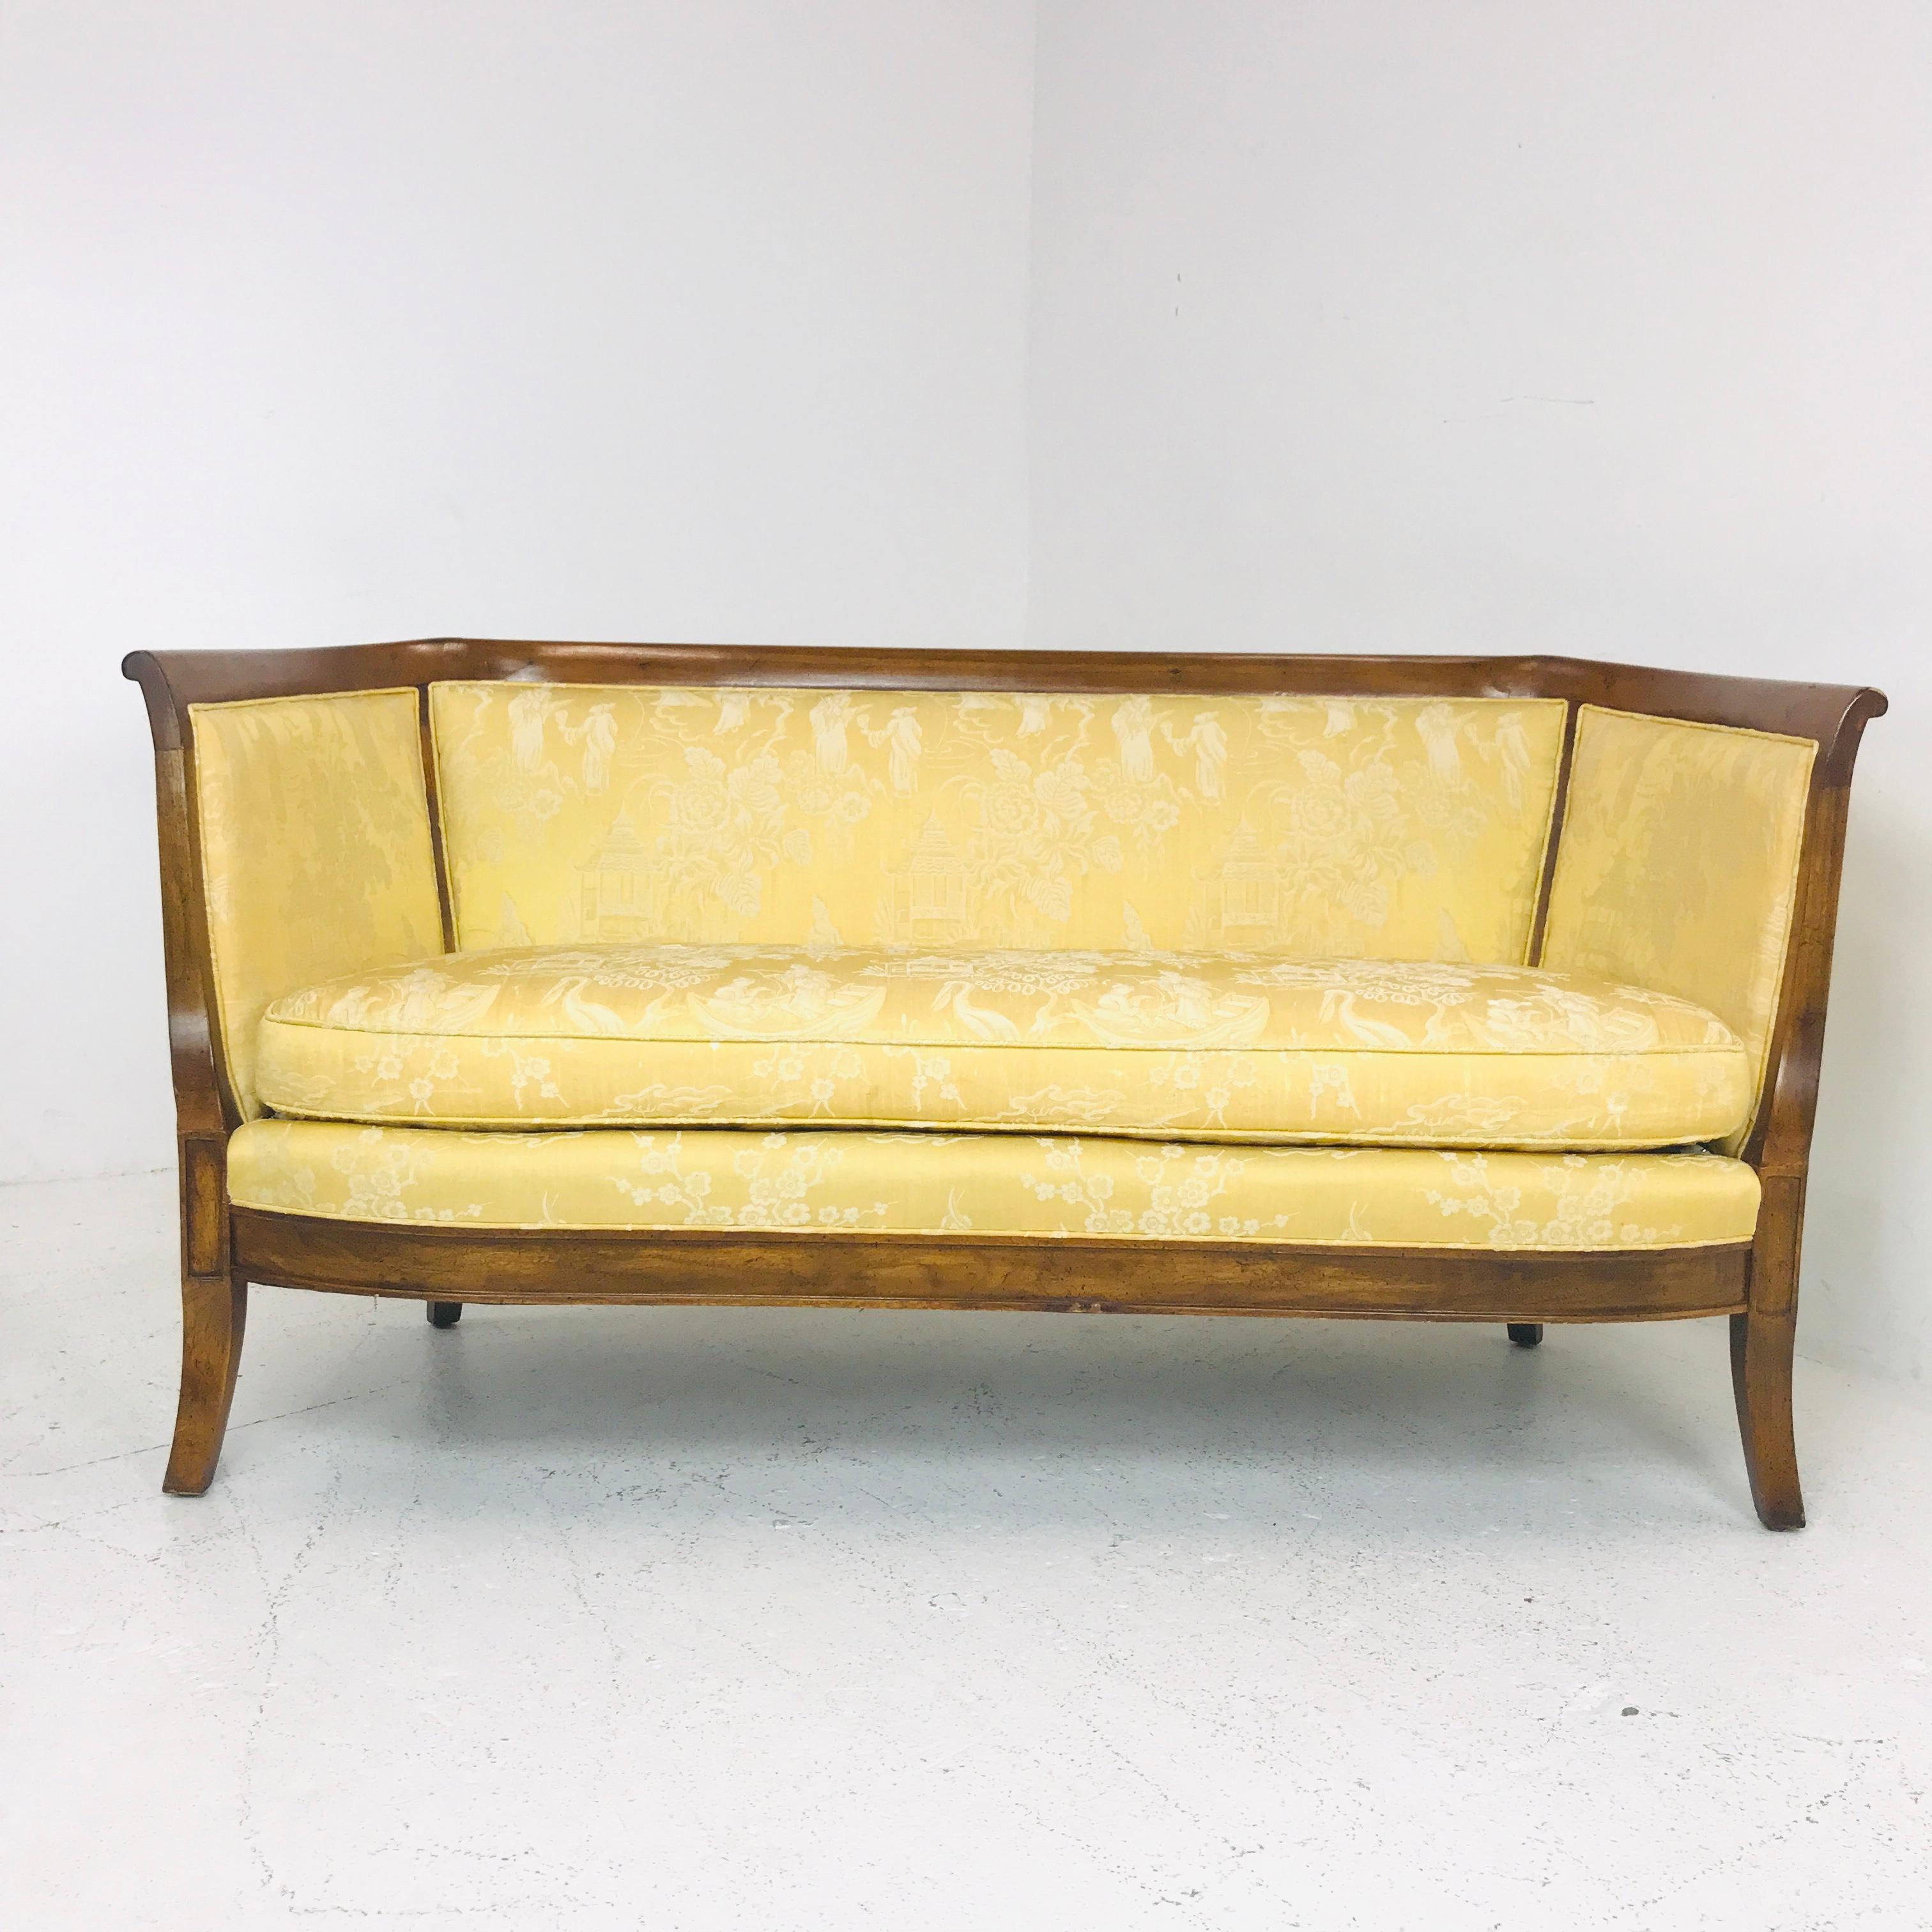 Holzverkleidetes Vintage-Bernhardt-Sofa mit Originalpolsterung. Die Polsterung ist in gutem altem Zustand und die Holzeinfassung muss nachgearbeitet werden. 

Abmessungen: 
60 B x 28 T x 30::5 T
Sitzhöhe 17.